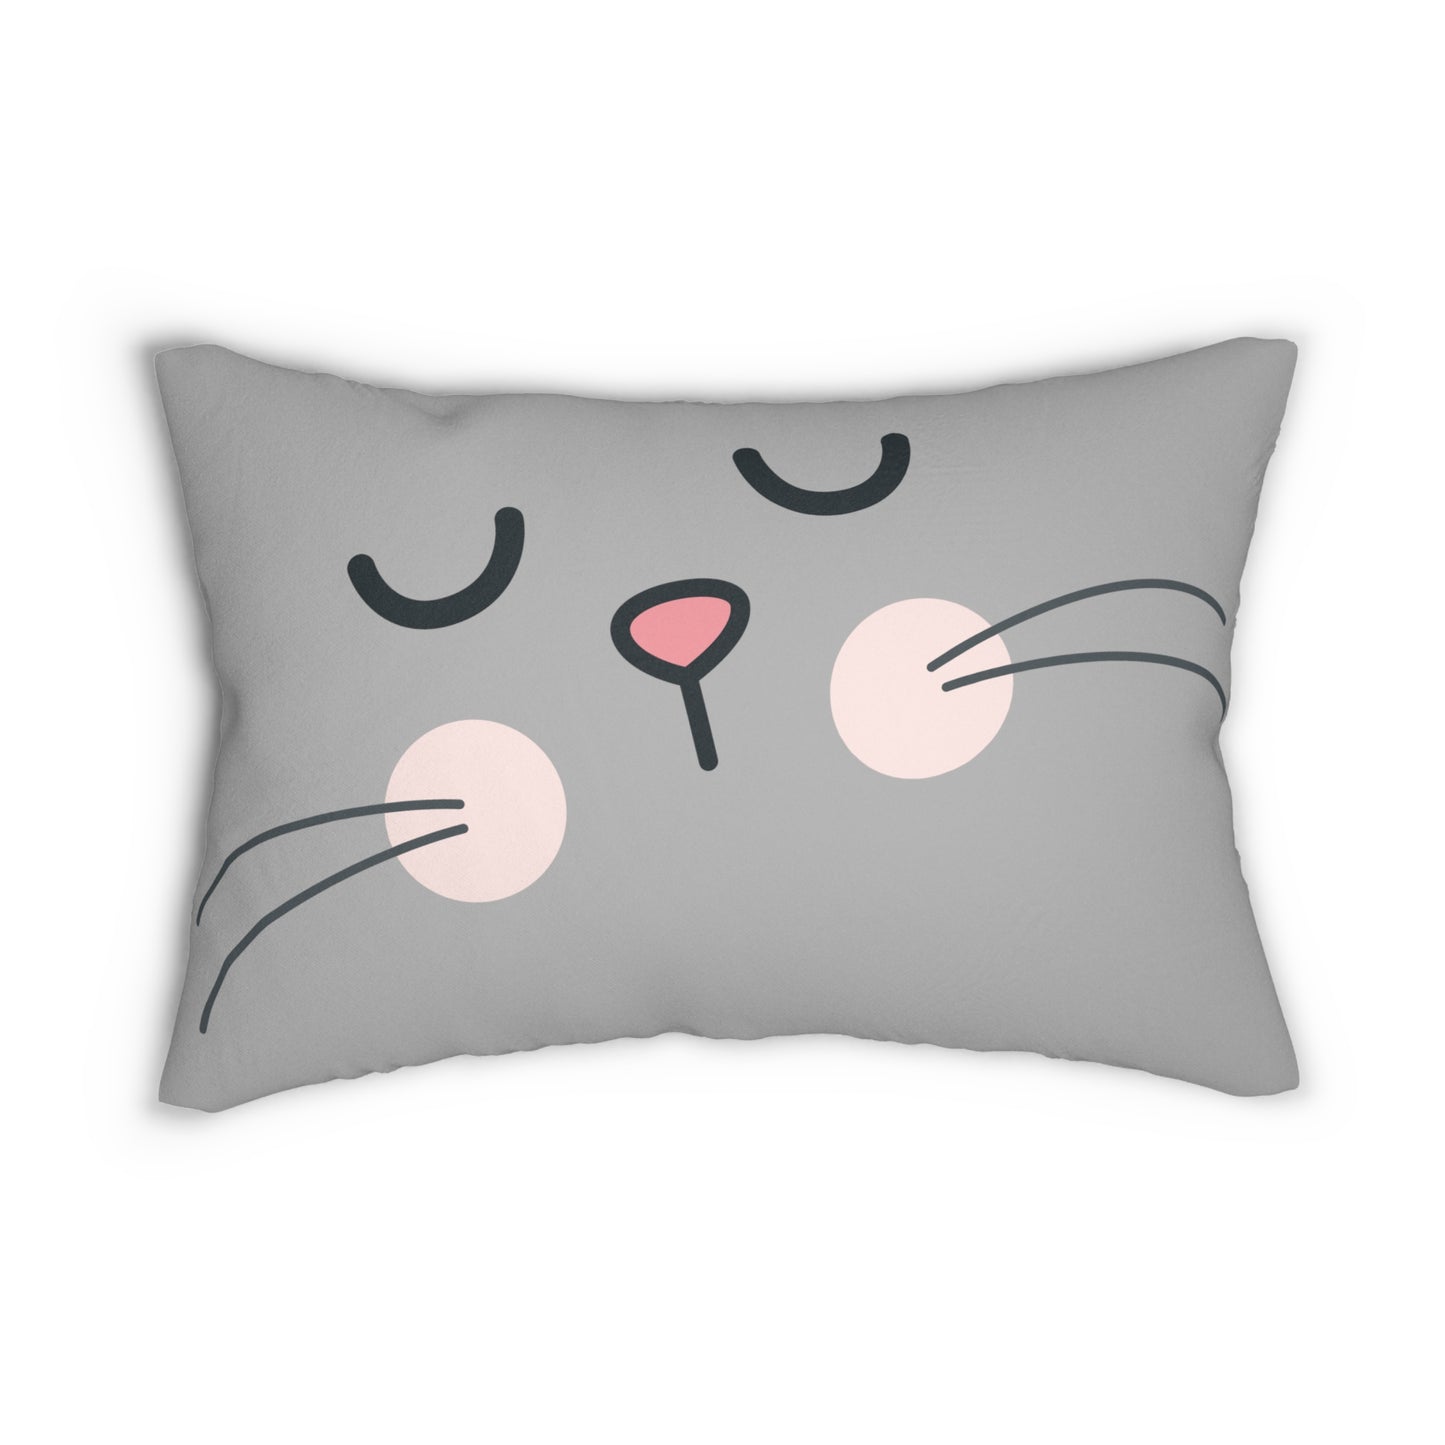 Peaceful Kitty Lumbar Pillow: Polyester; 20" x 14"; Grey